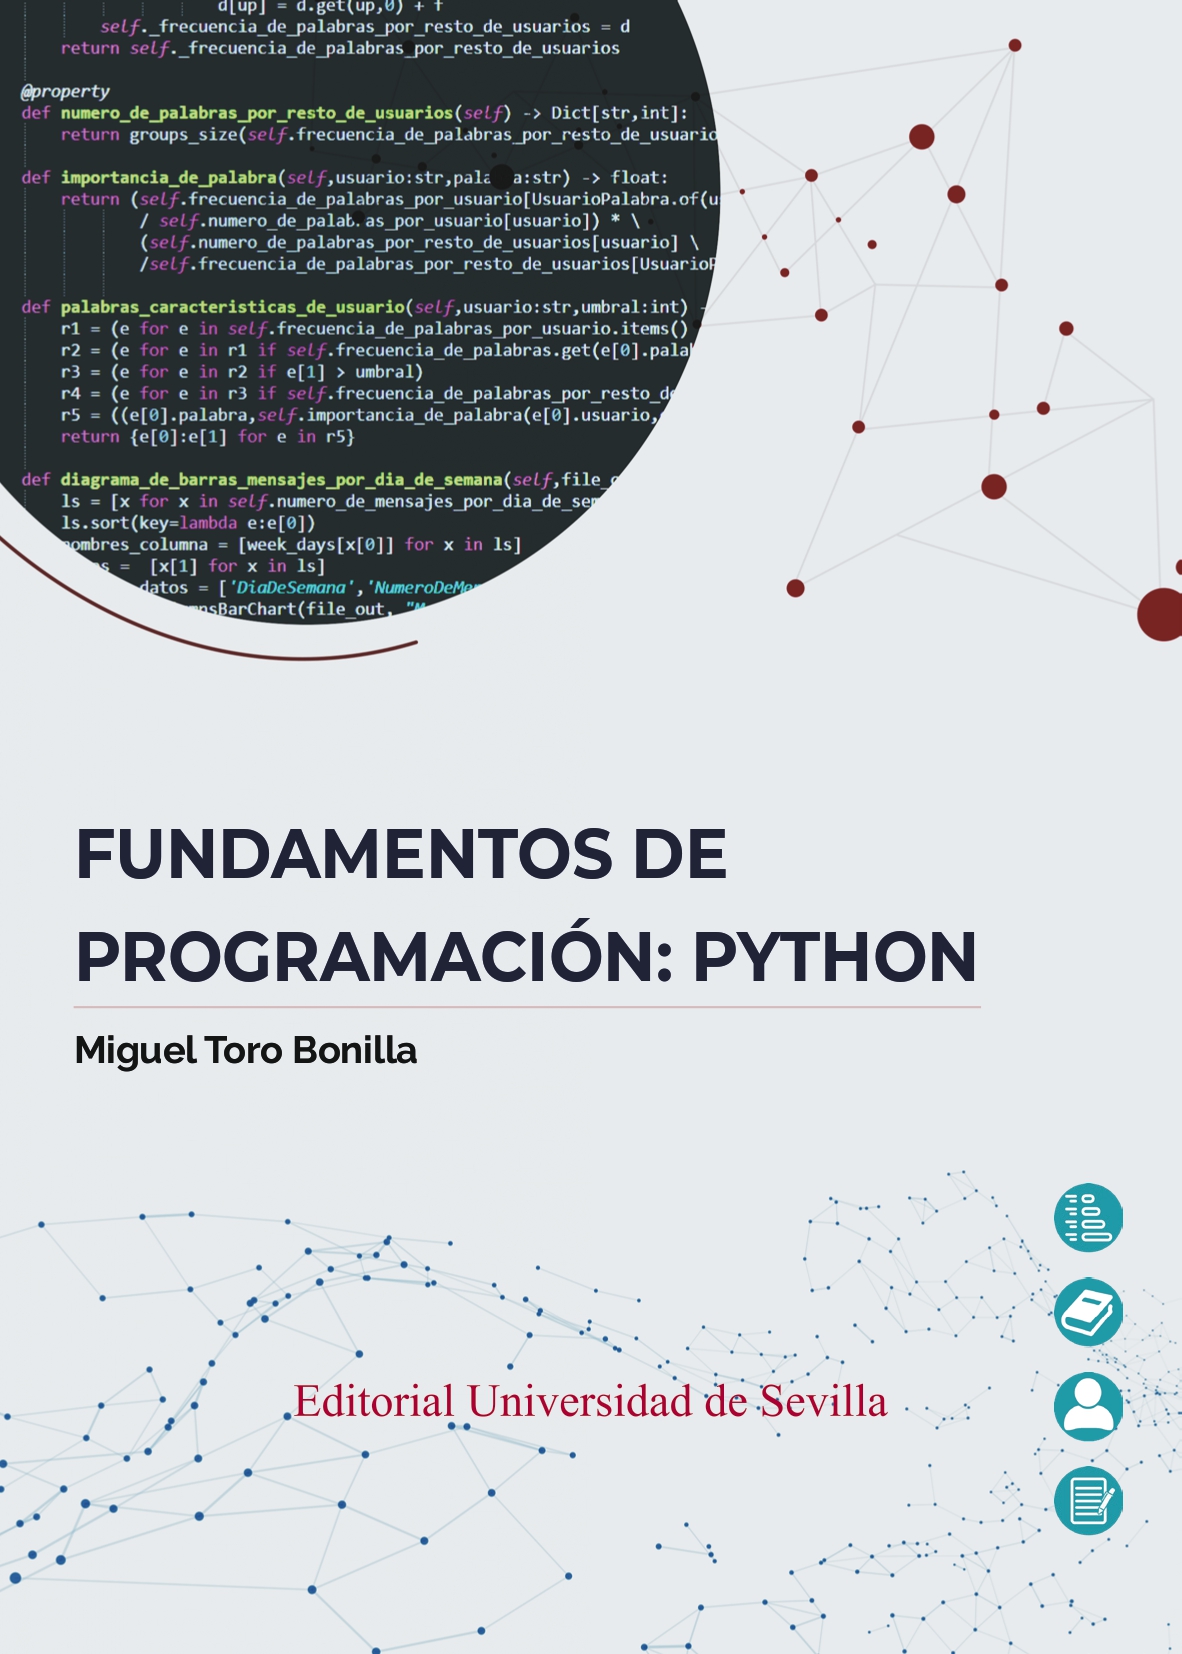 Imagen de portada del libro Fundamentos de programación: PYTHON